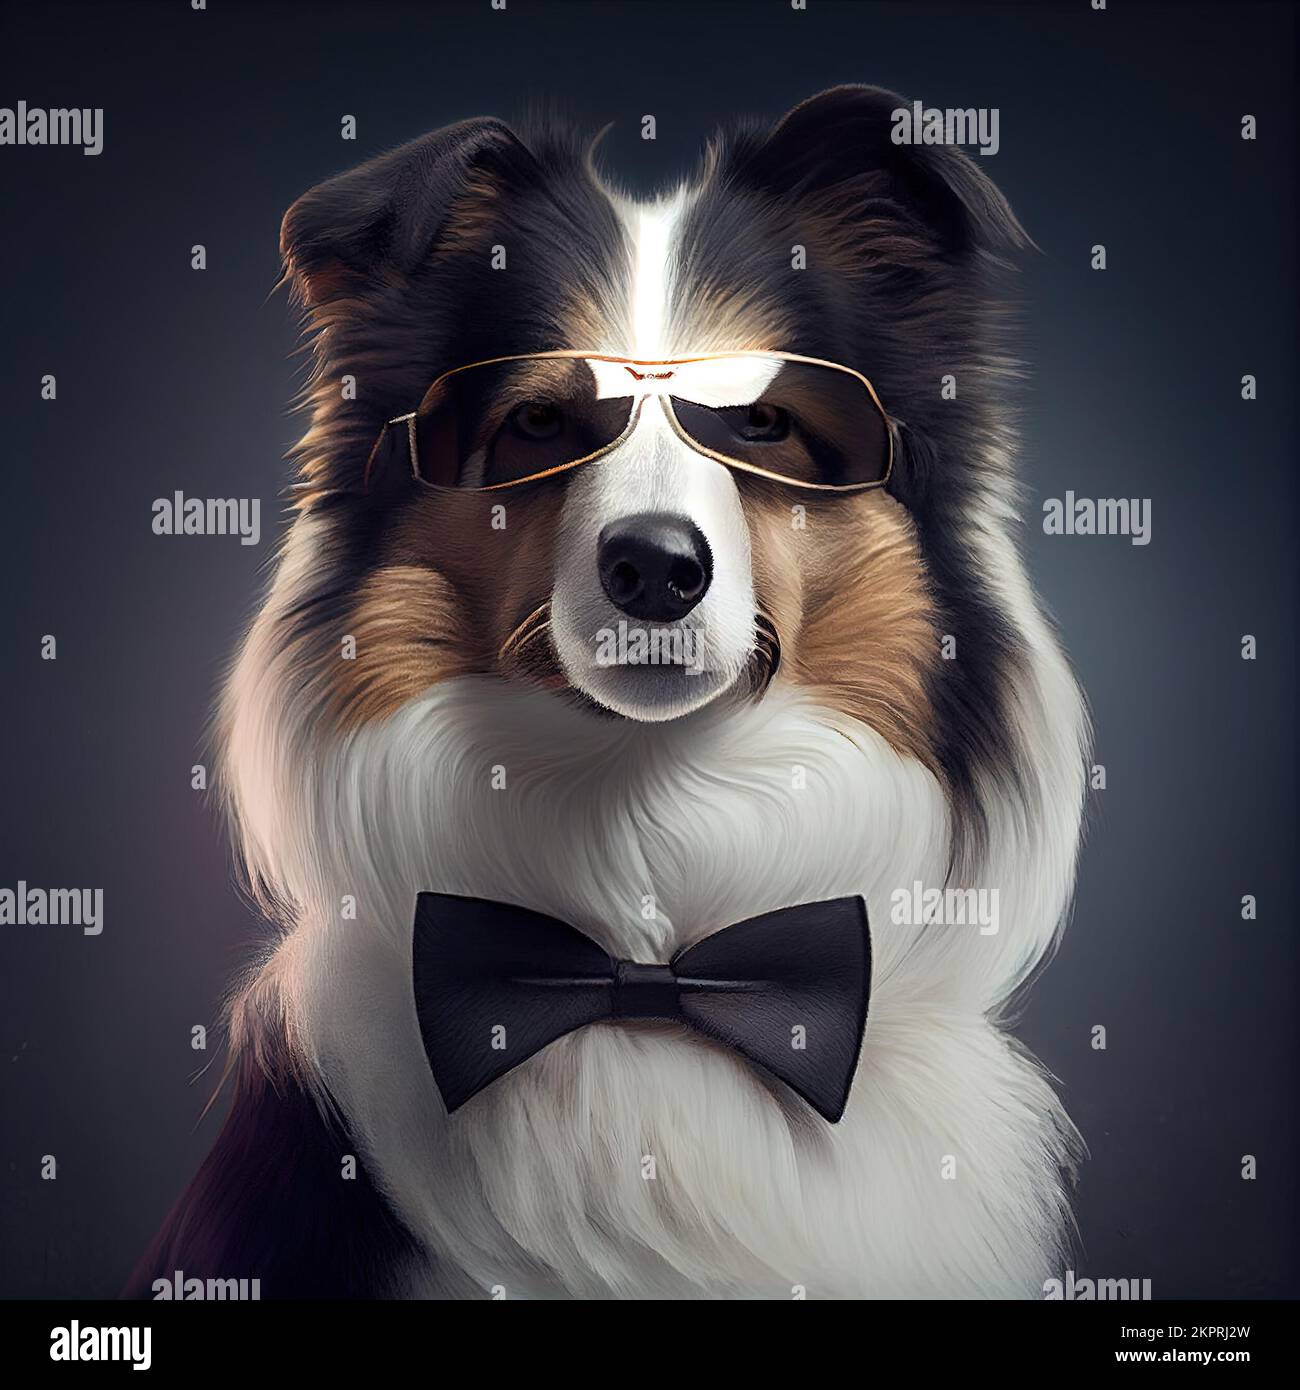 Estudio antropomórfico de un lindo perro Collie en un traje. Ilustración generada digitalmente. Foto de stock